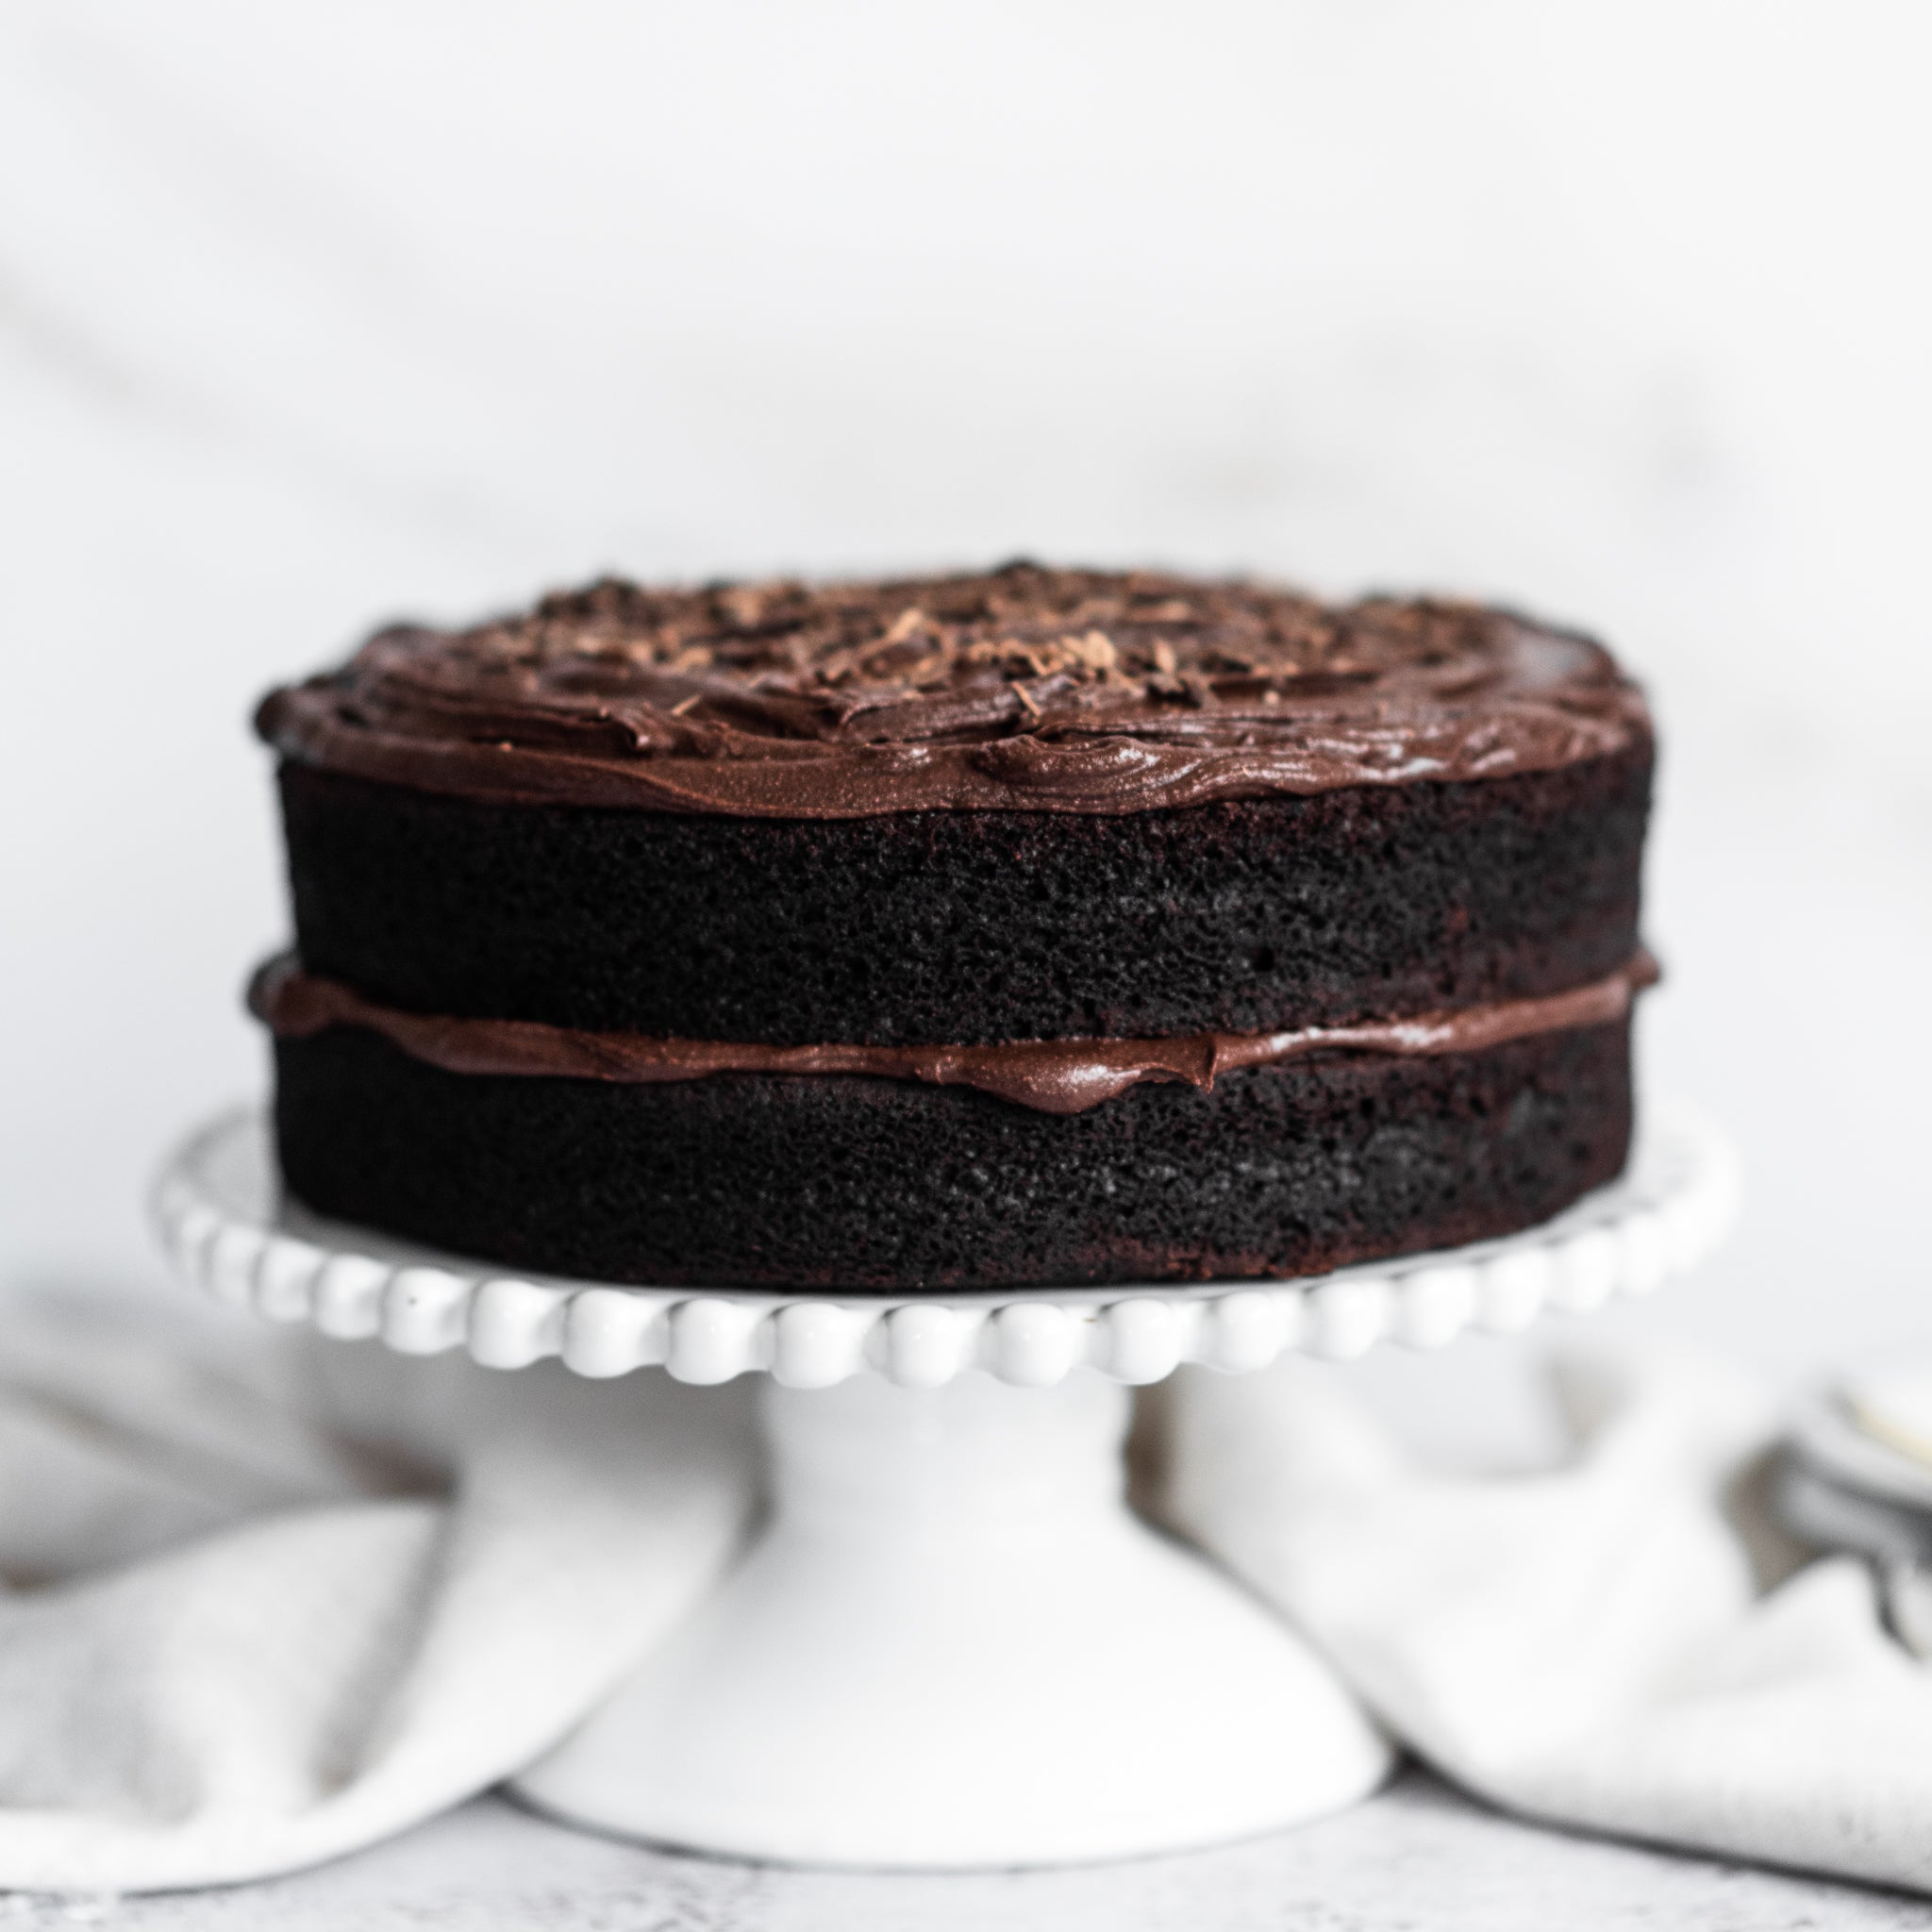 Vegan-Chocolate-Cake-SQUARE-2.jpg